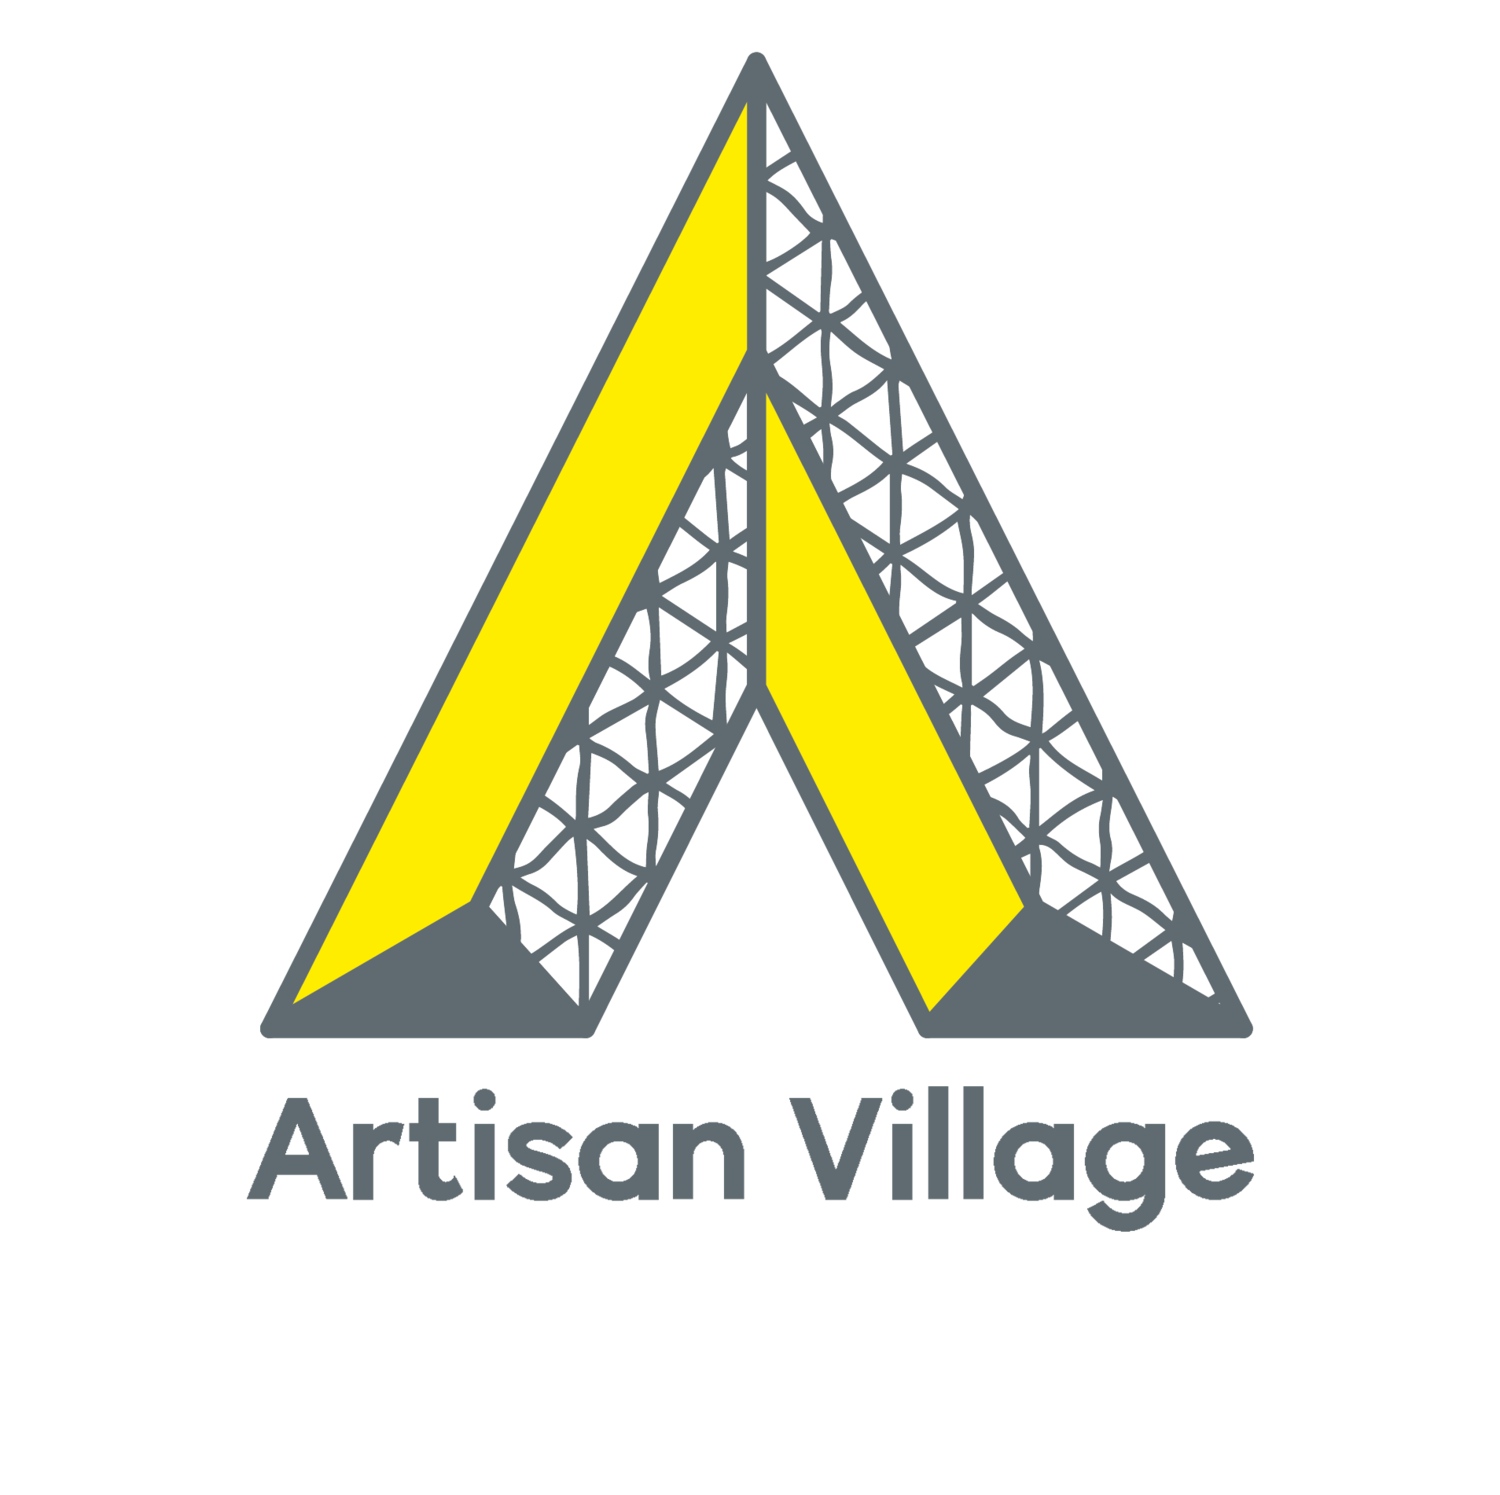 Artisan Village